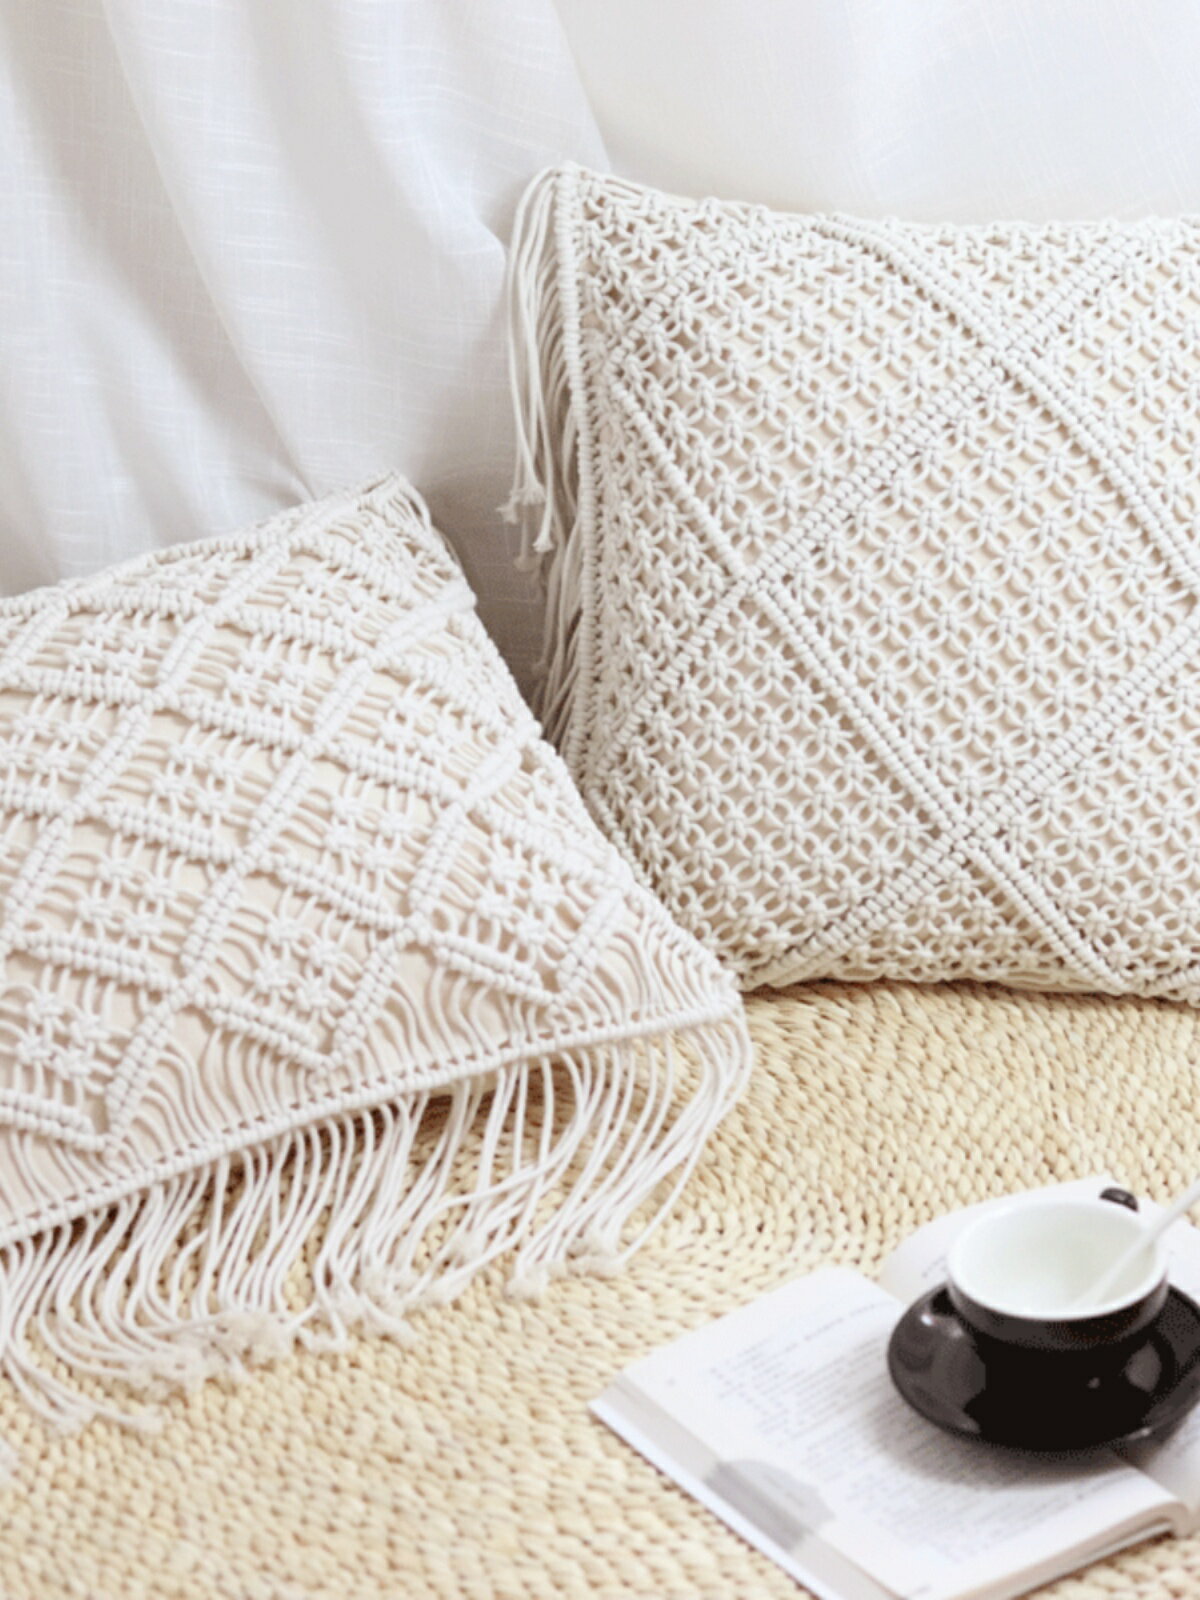 棉線棉繩手工編織流蘇抱枕INS波西米亞靠枕 掛毯拍攝道具靠墊沙發